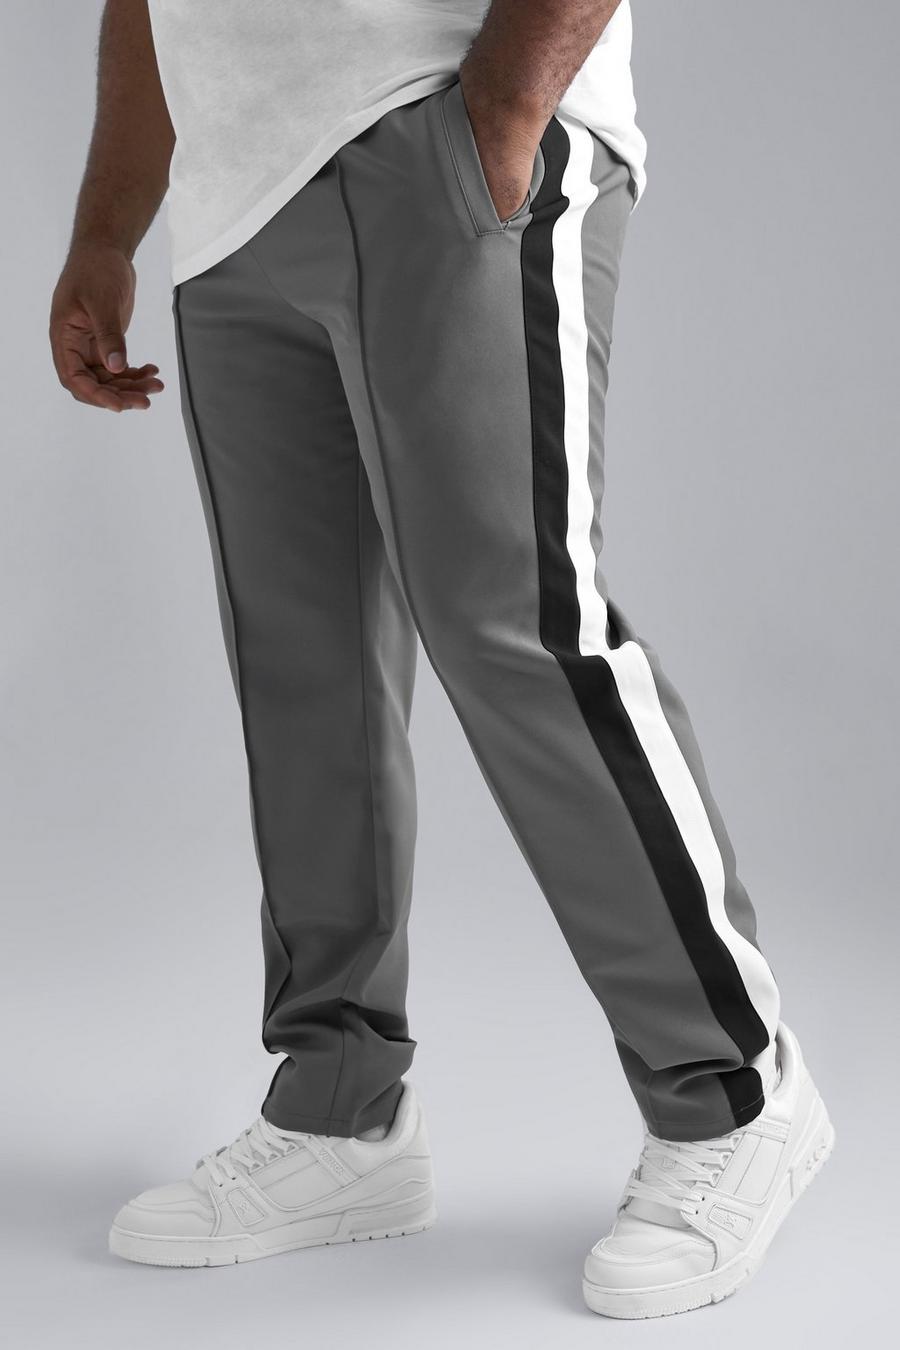 Pantalón Plus entallado con estampado universitario, Dark grey gris